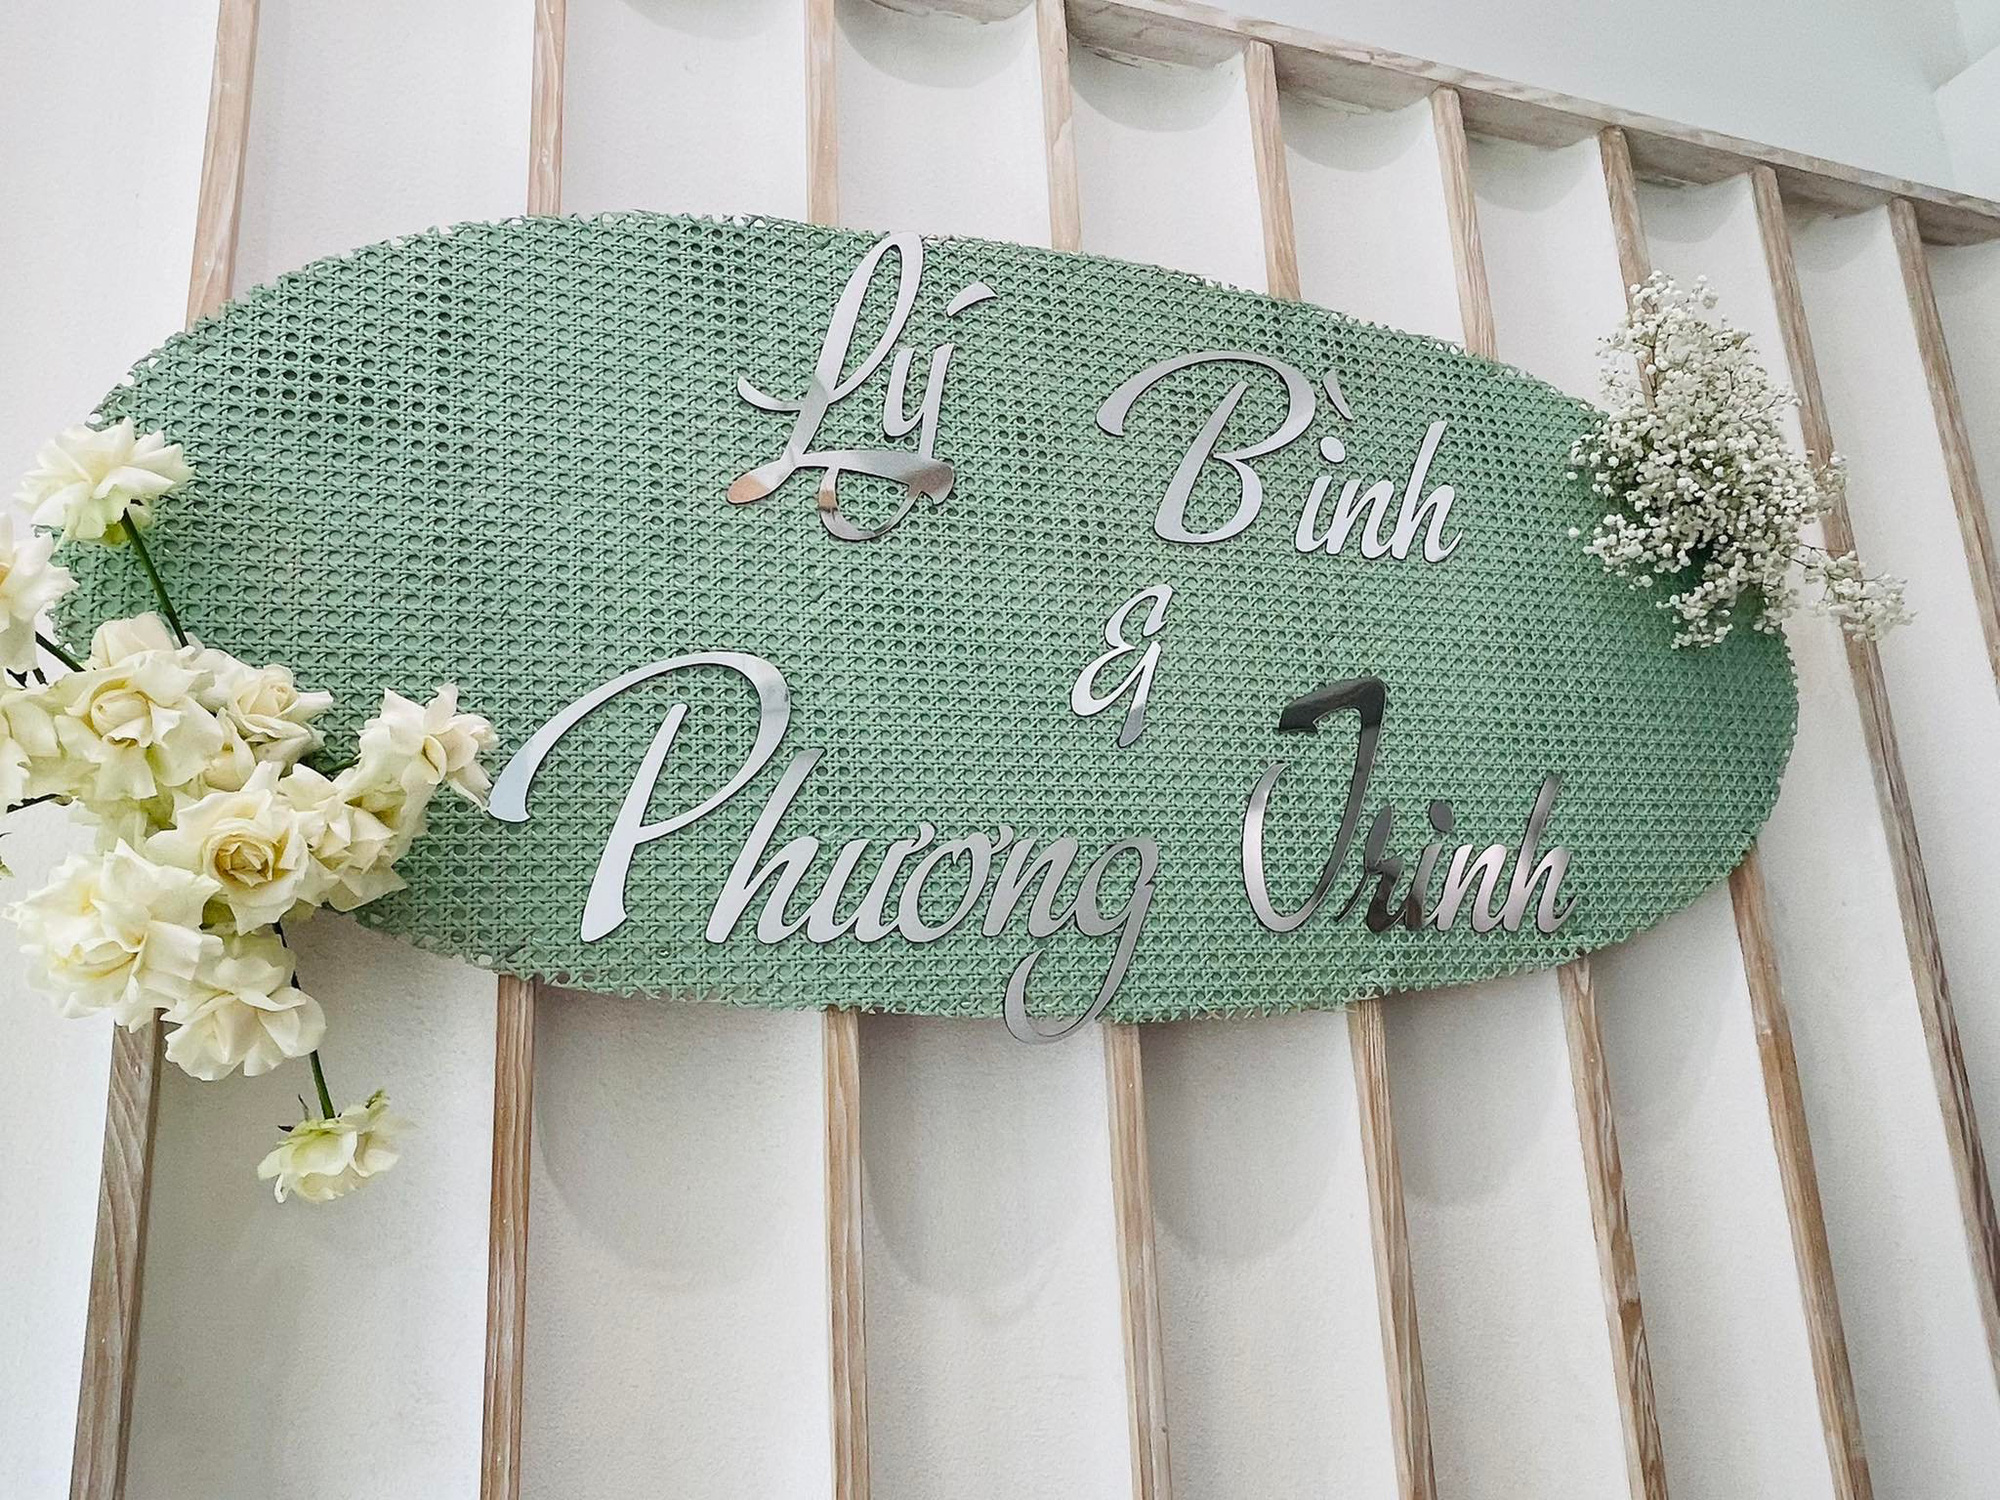 Đám cưới Phương Trinh Jolie - Lý Bình: Nhà riêng trang hoàng đầy hoa tươi, tông màu cưới xanh mint quá xinh - Ảnh 3.